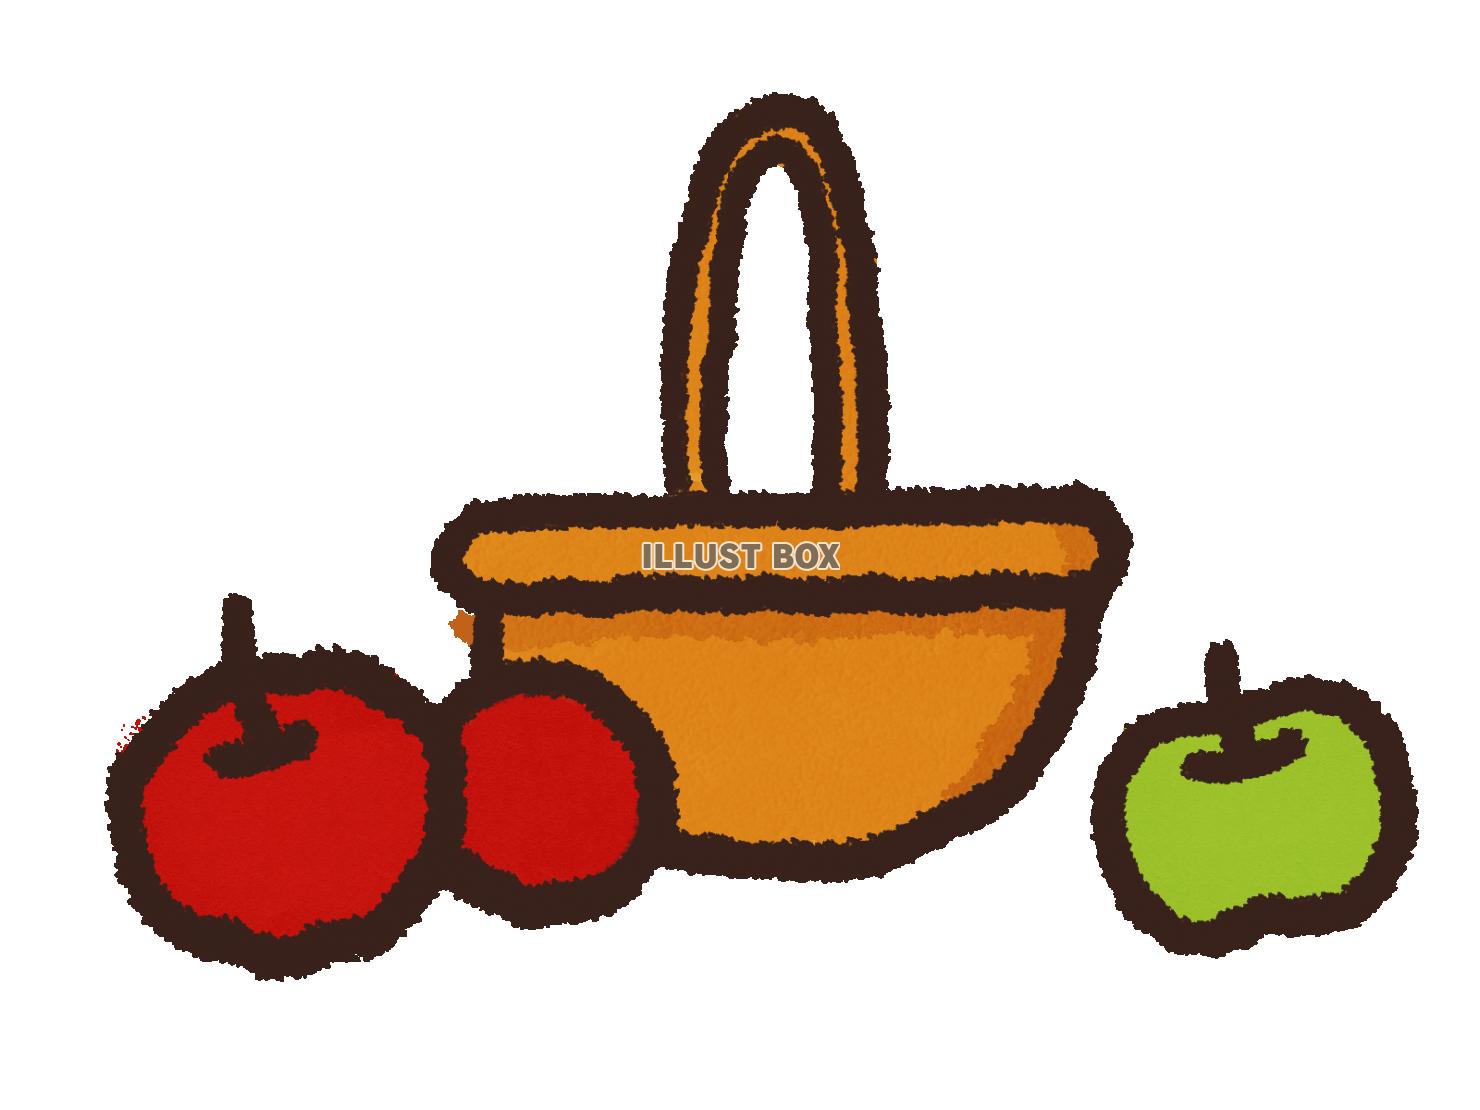 りんごの収穫